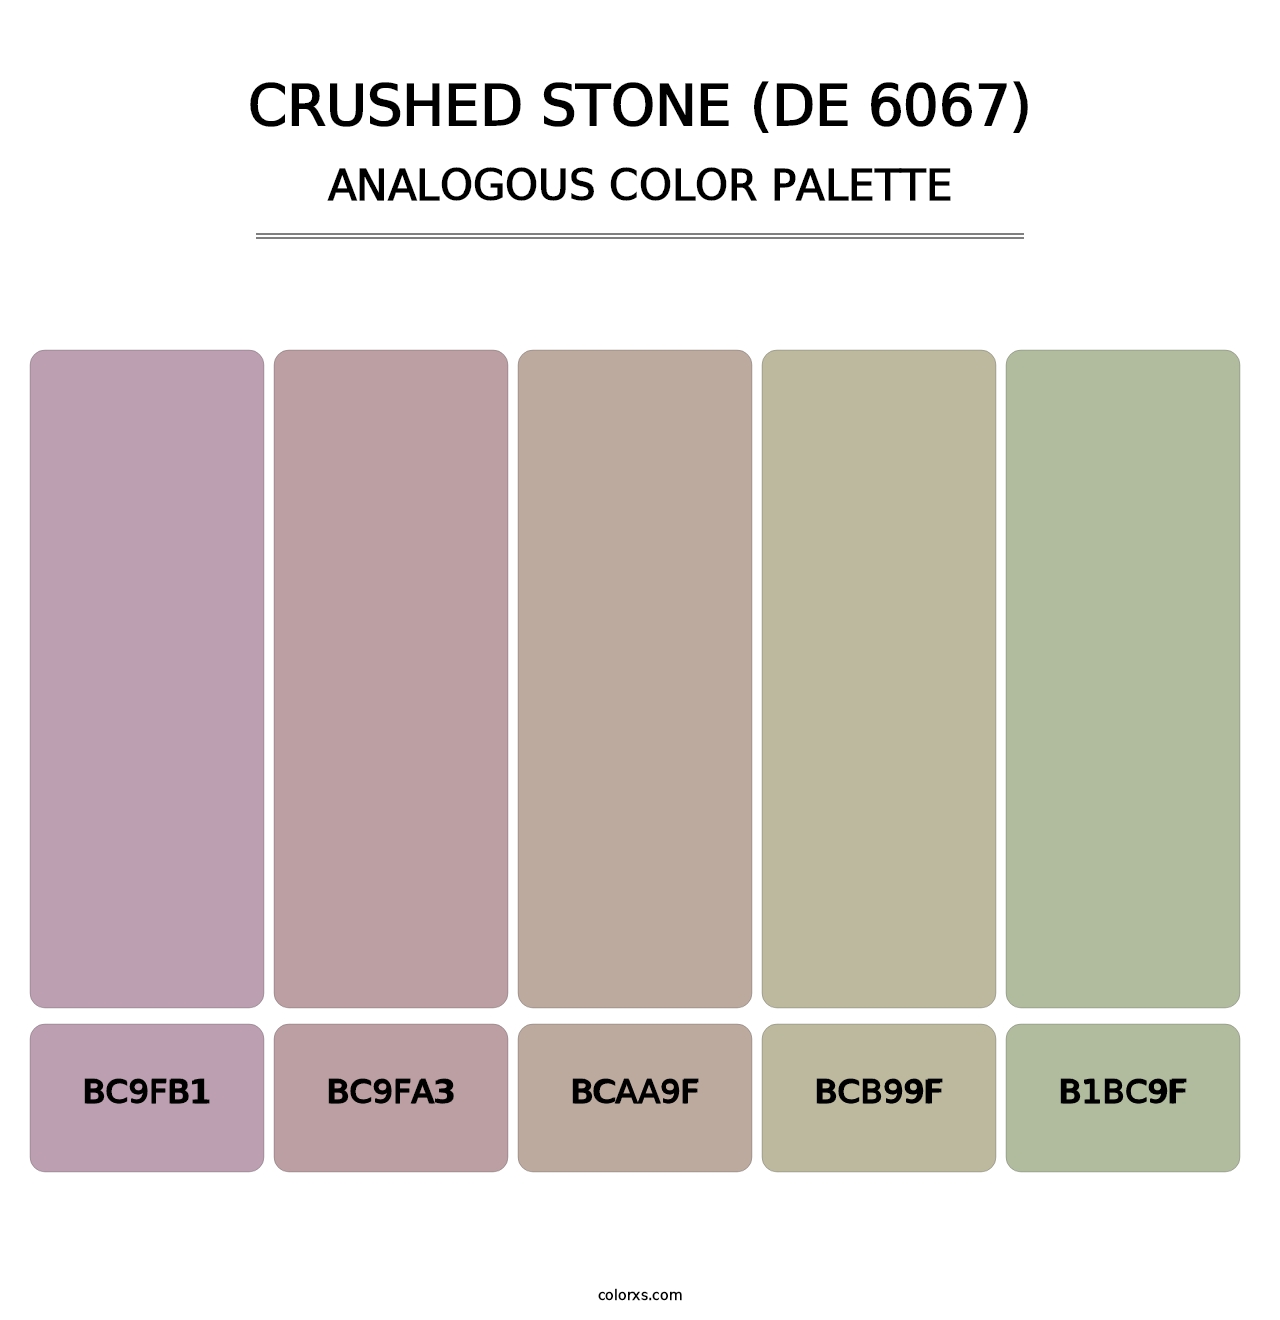 Crushed Stone (DE 6067) - Analogous Color Palette